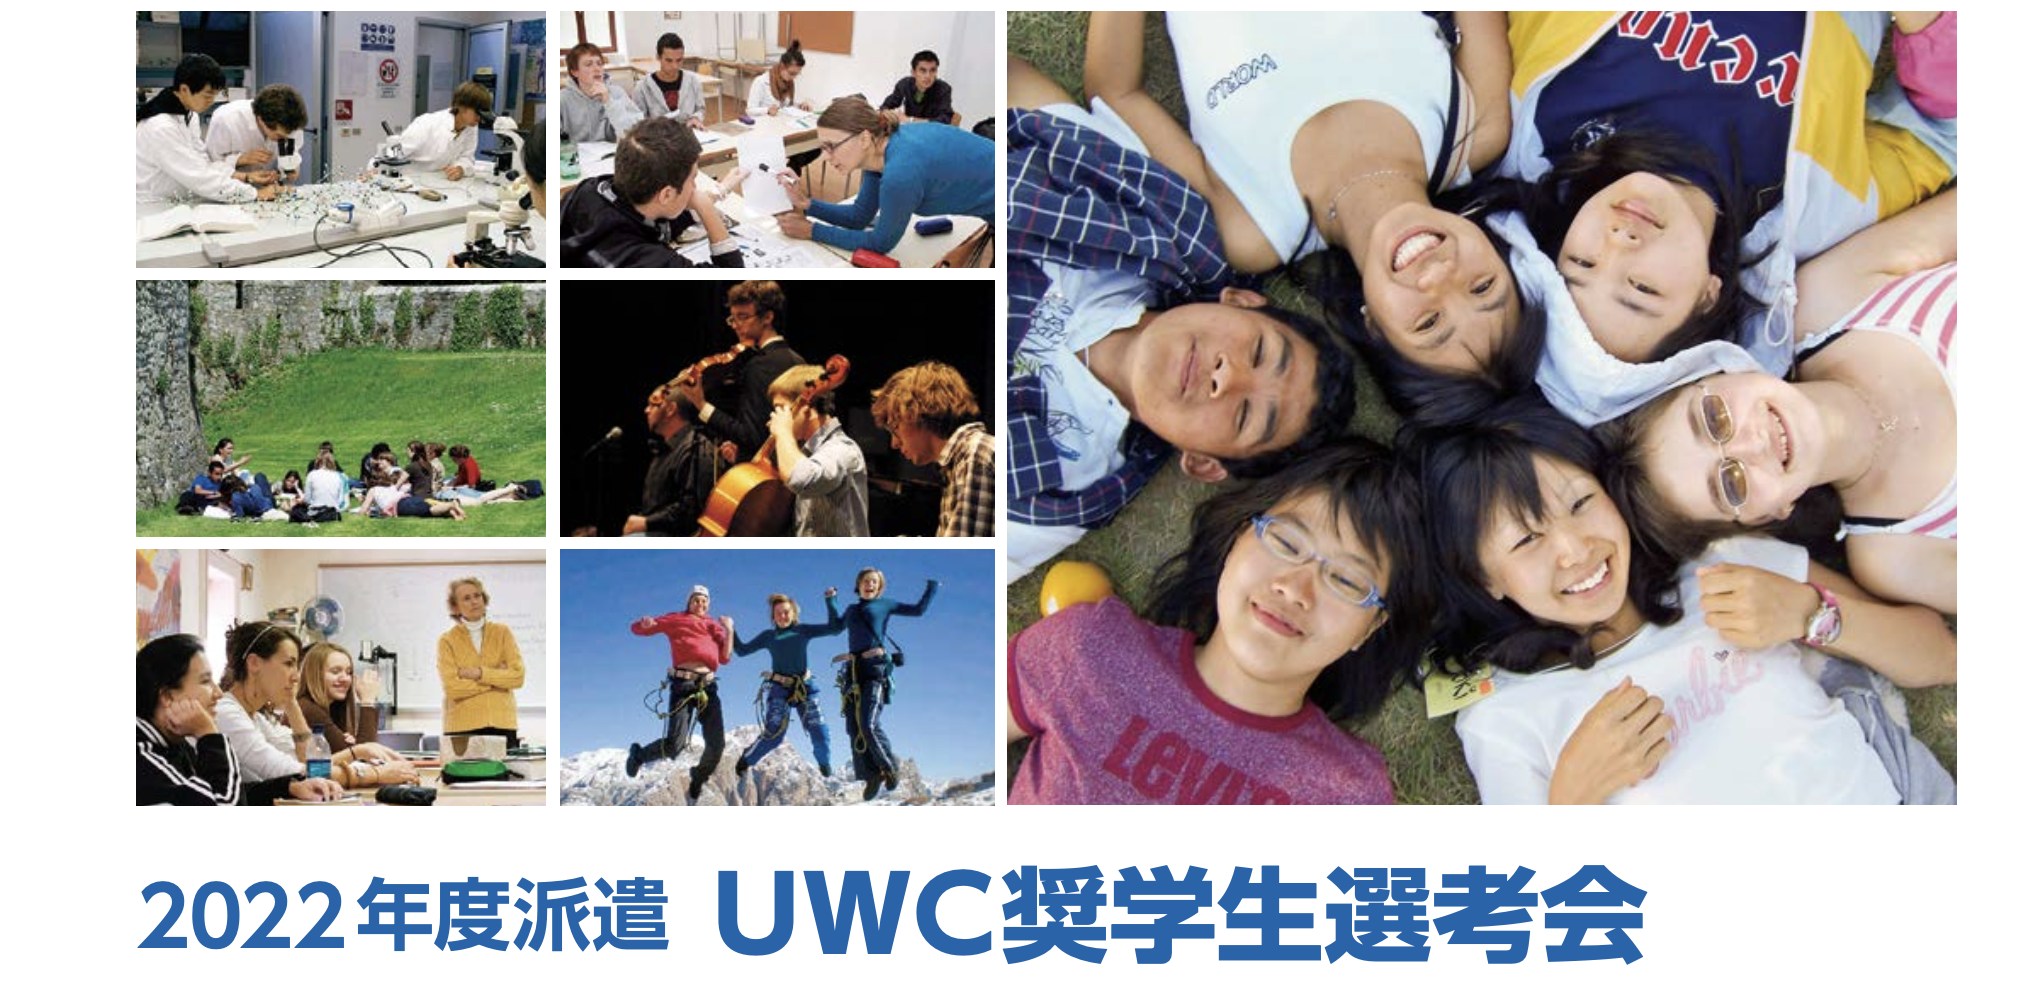 2022年度派遣 UWC奨学生選考会を開催します ～世界各国から集まった生徒とともに「人生を変える体験」をしてみませんか？～